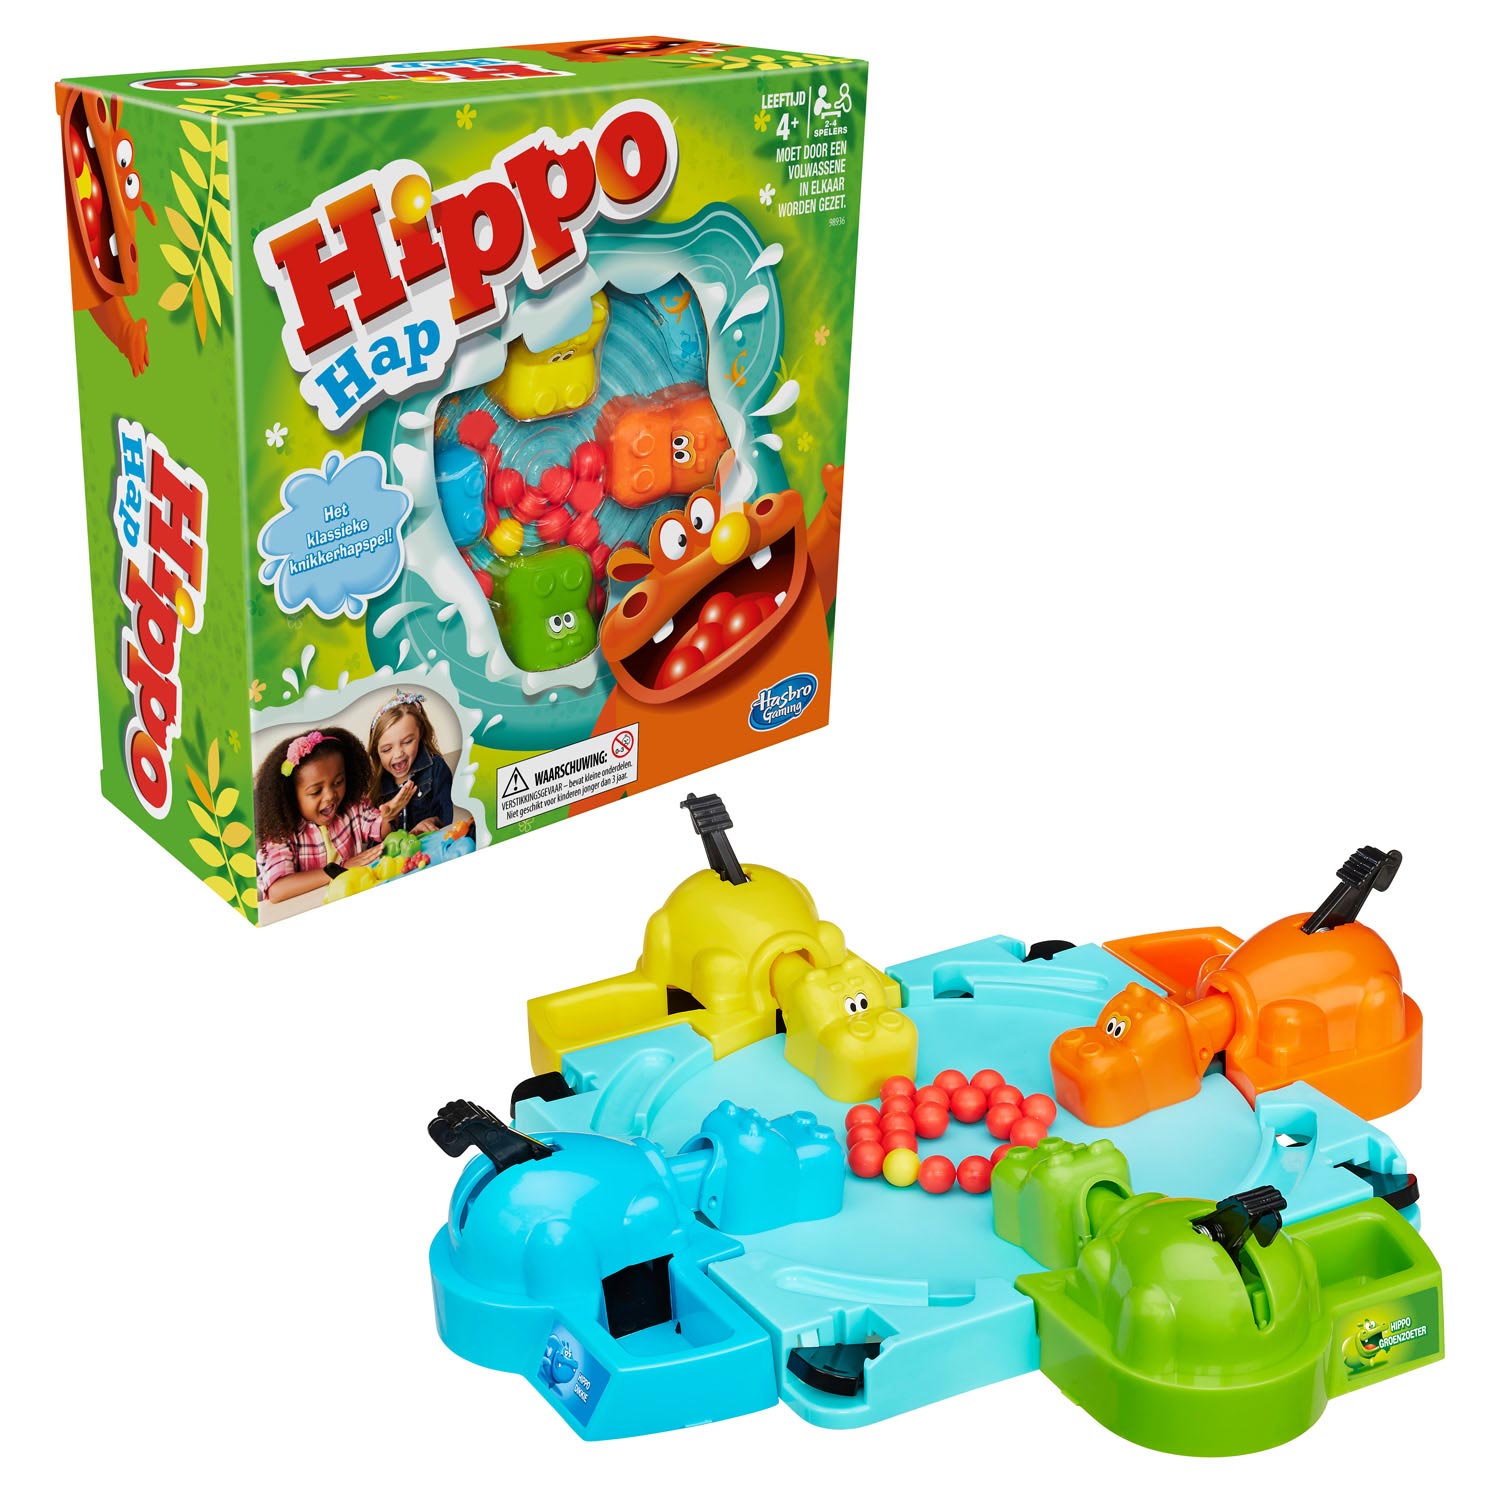 Hippo Hap NL